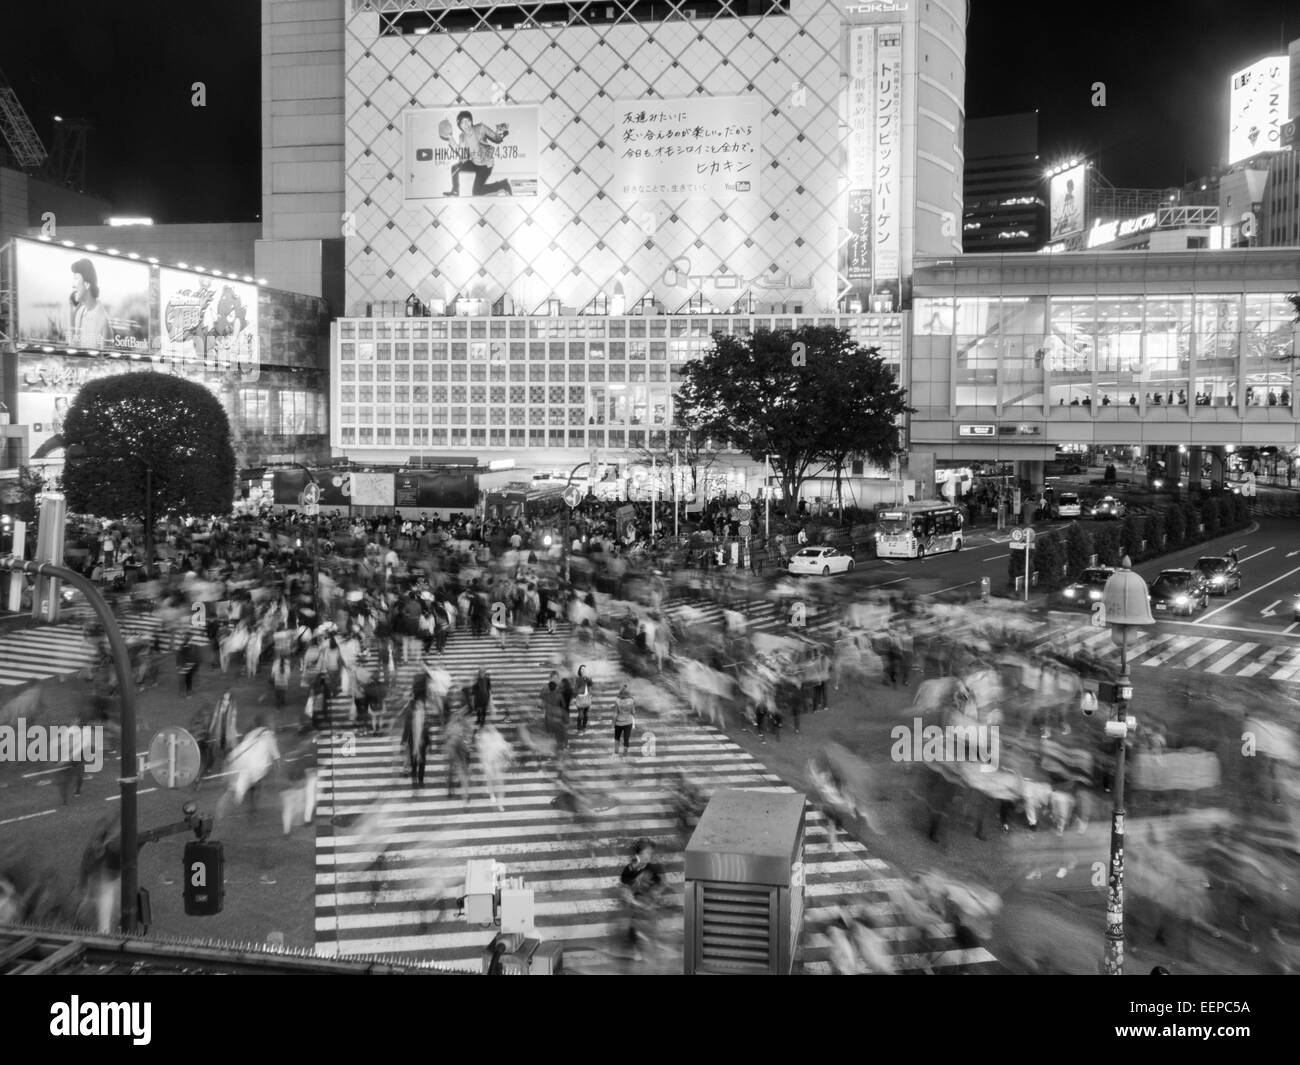 Immagine in bianco e nero di Shibuya attraversando la folla in movimento Foto Stock